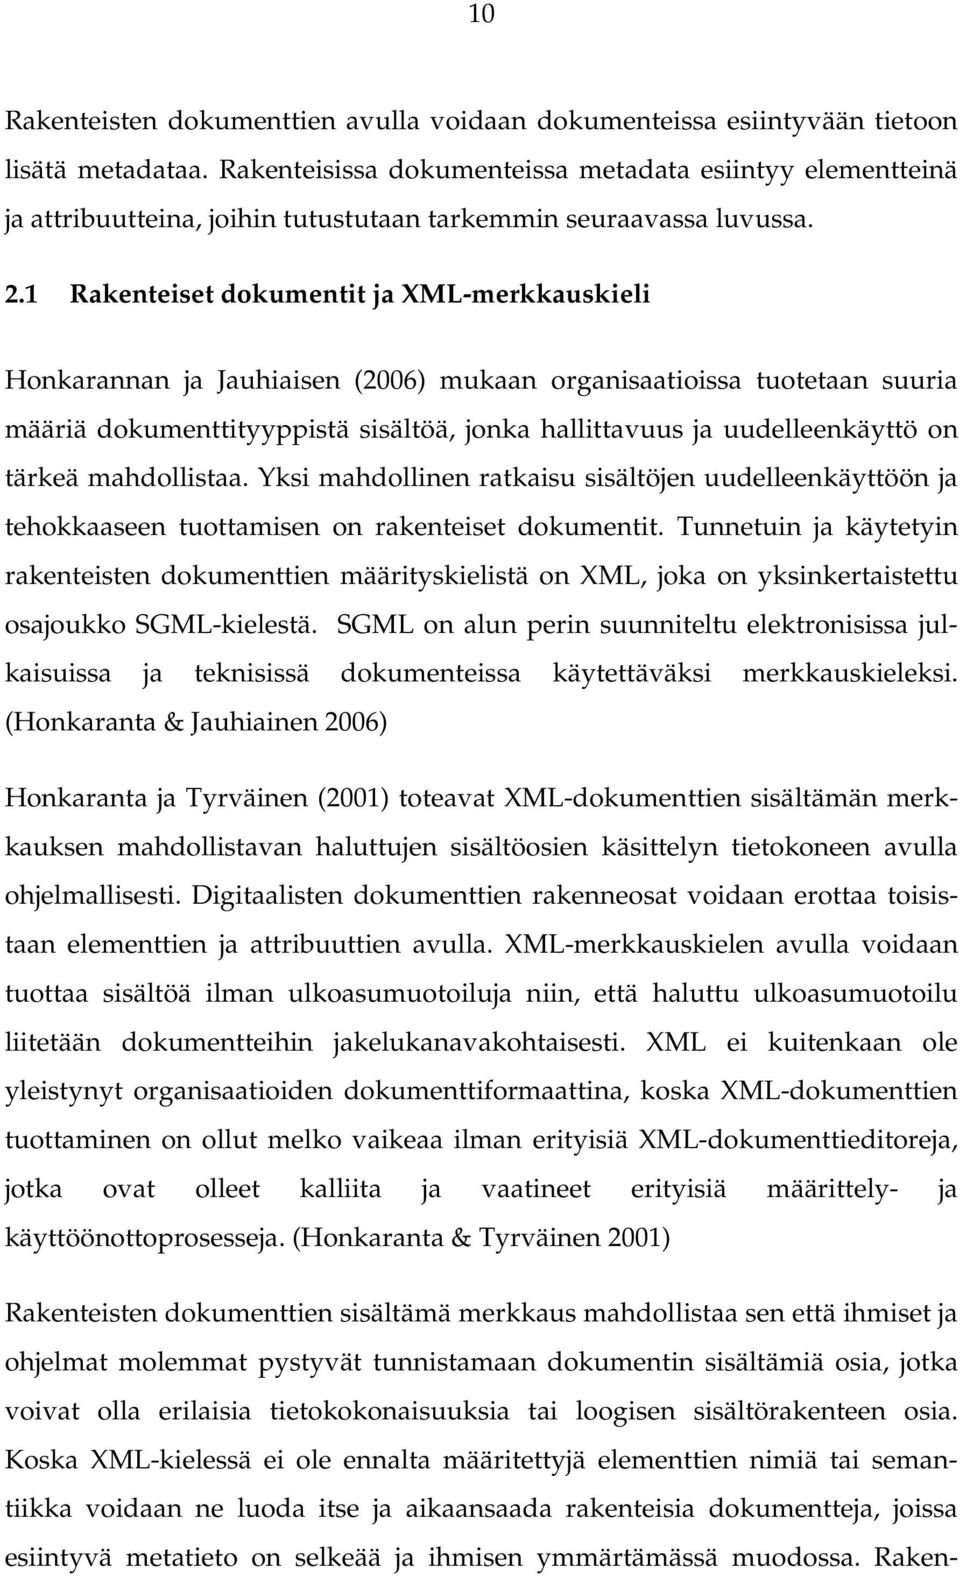 1 Rakenteiset dokumentit ja XML-merkkauskieli Honkarannan ja Jauhiaisen (2006) mukaan organisaatioissa tuotetaan suuria määriä dokumenttityyppistä sisältöä, jonka hallittavuus ja uudelleenkäyttö on